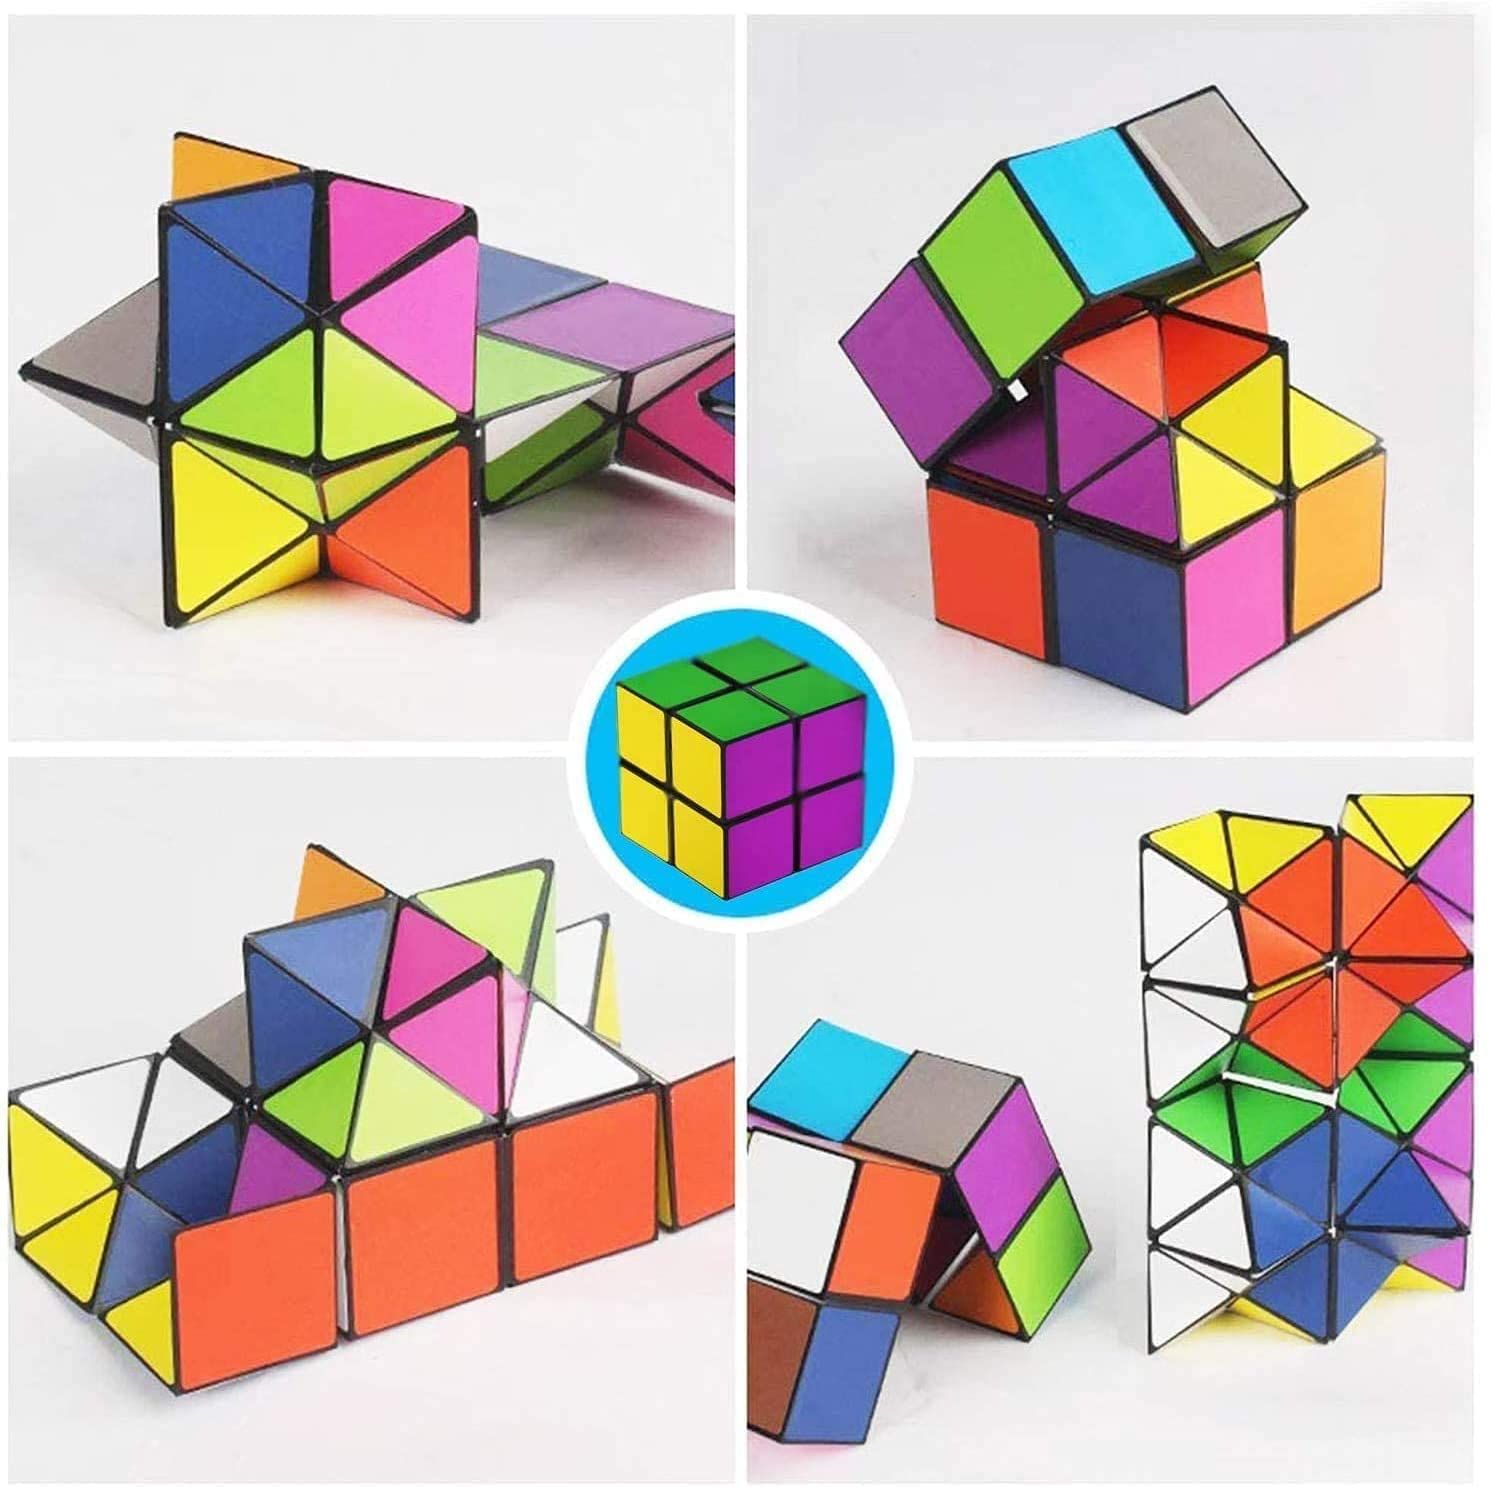 マジックスターキューブ 2in 1立体キューブ 折りたたみキューブ 無限キューブパズル 魔方 2 in 1セット 無限キューブ ユークリッドキューブ インフィニティキューブ ストレス解消 育脳 脳トレ 知能ゲーム 知育玩具